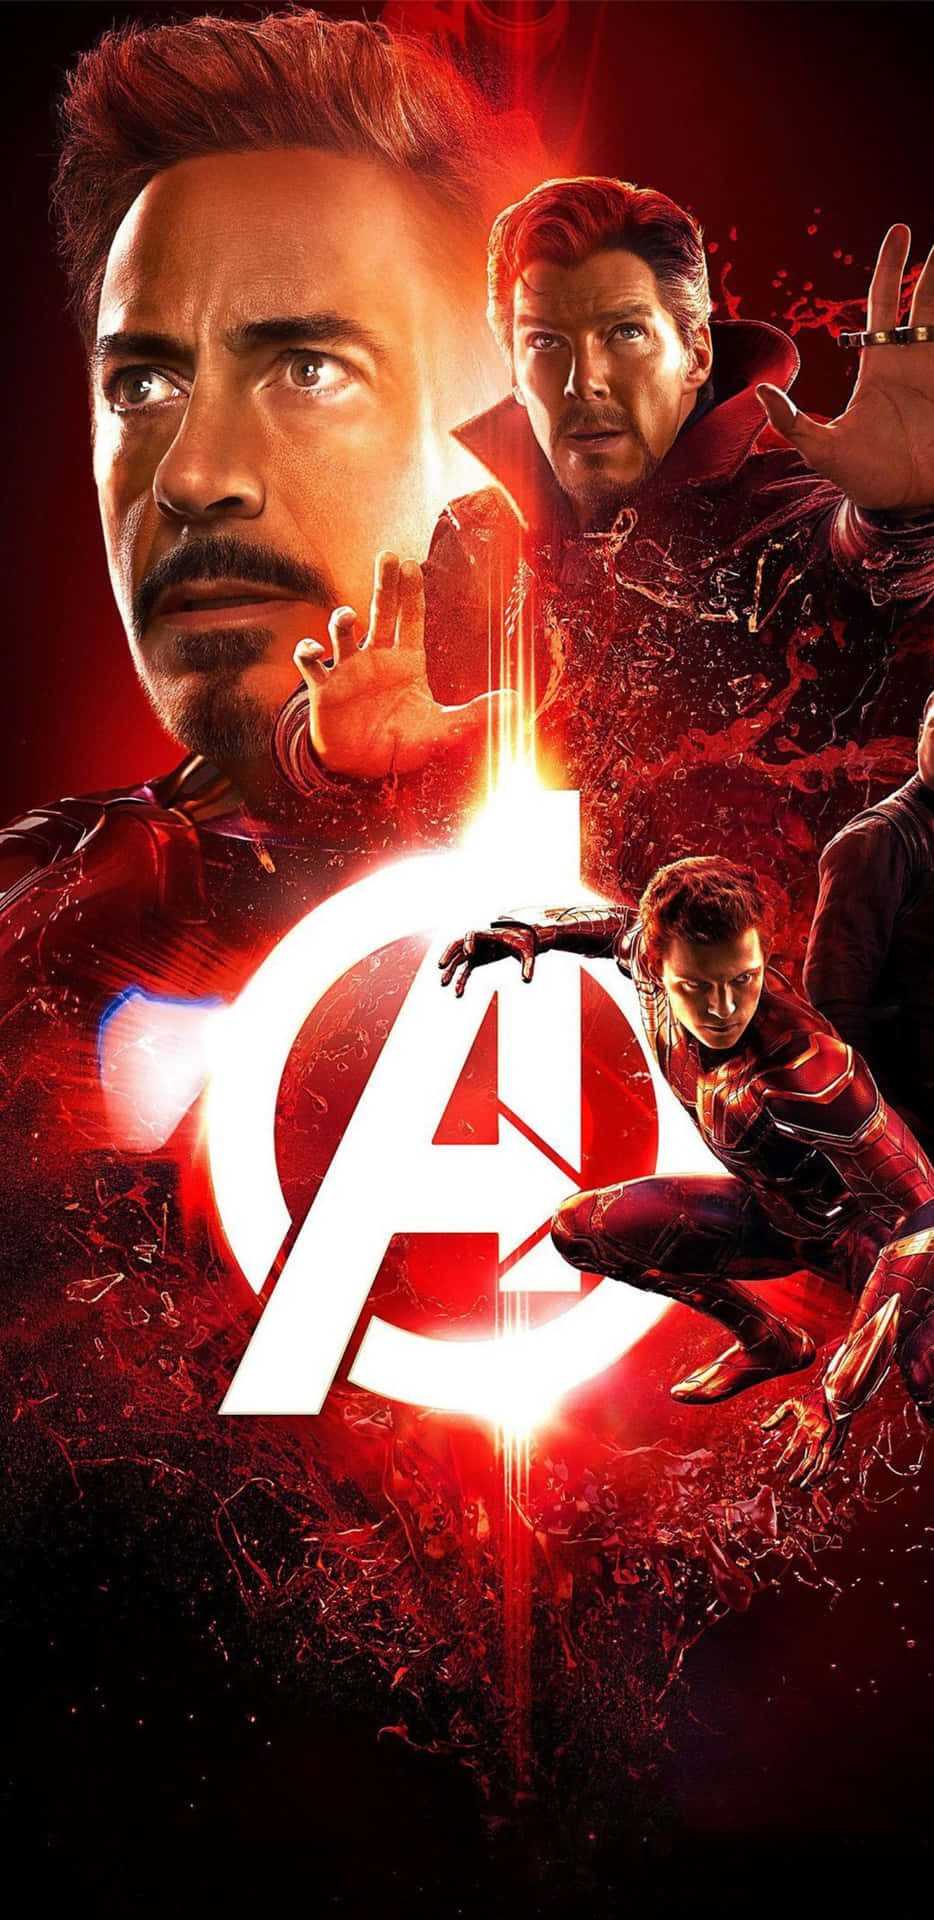 Pixel3xl Bakgrundsbild Med Iron Man, Doctor Strange Och Spiderman.